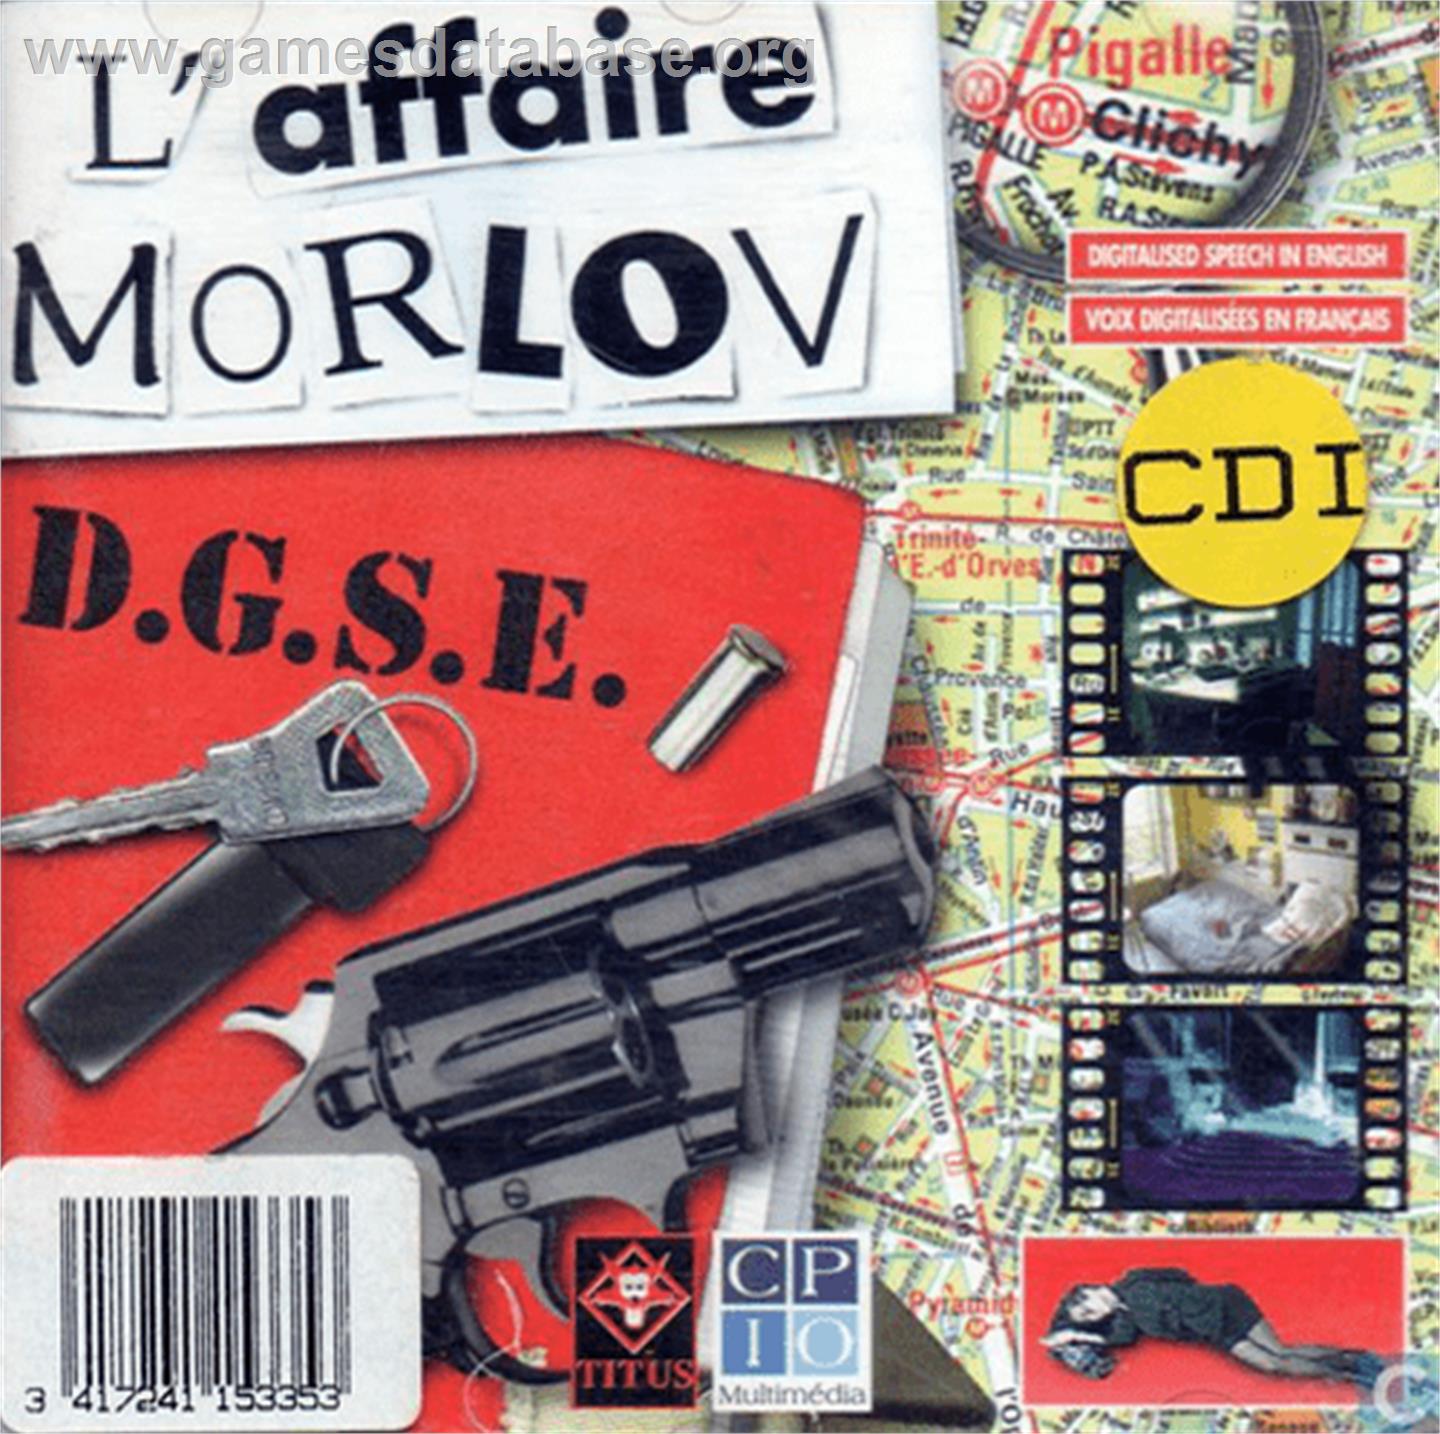 L'affaire Morlov - Philips CD-i - Artwork - Box